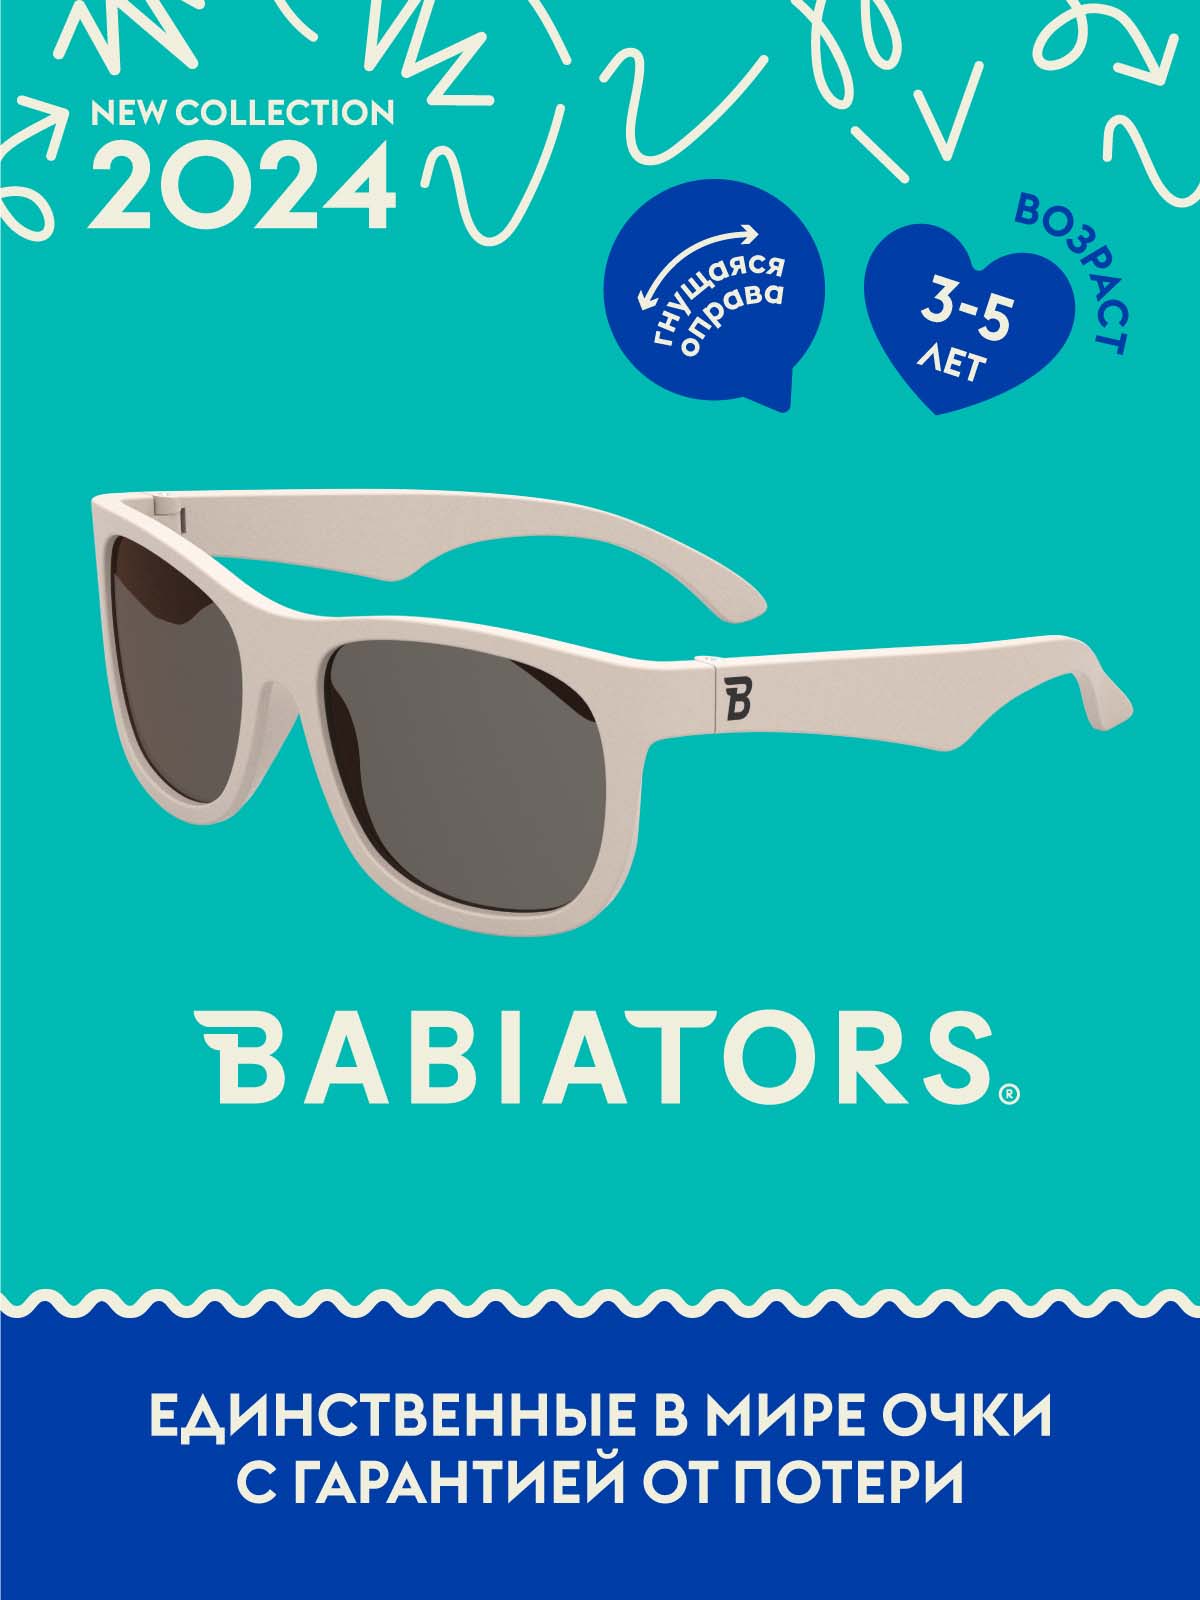 Очки Babiators Original Navigator солнцезащитные Сладкие сливки (3-5) O-NAV016-M